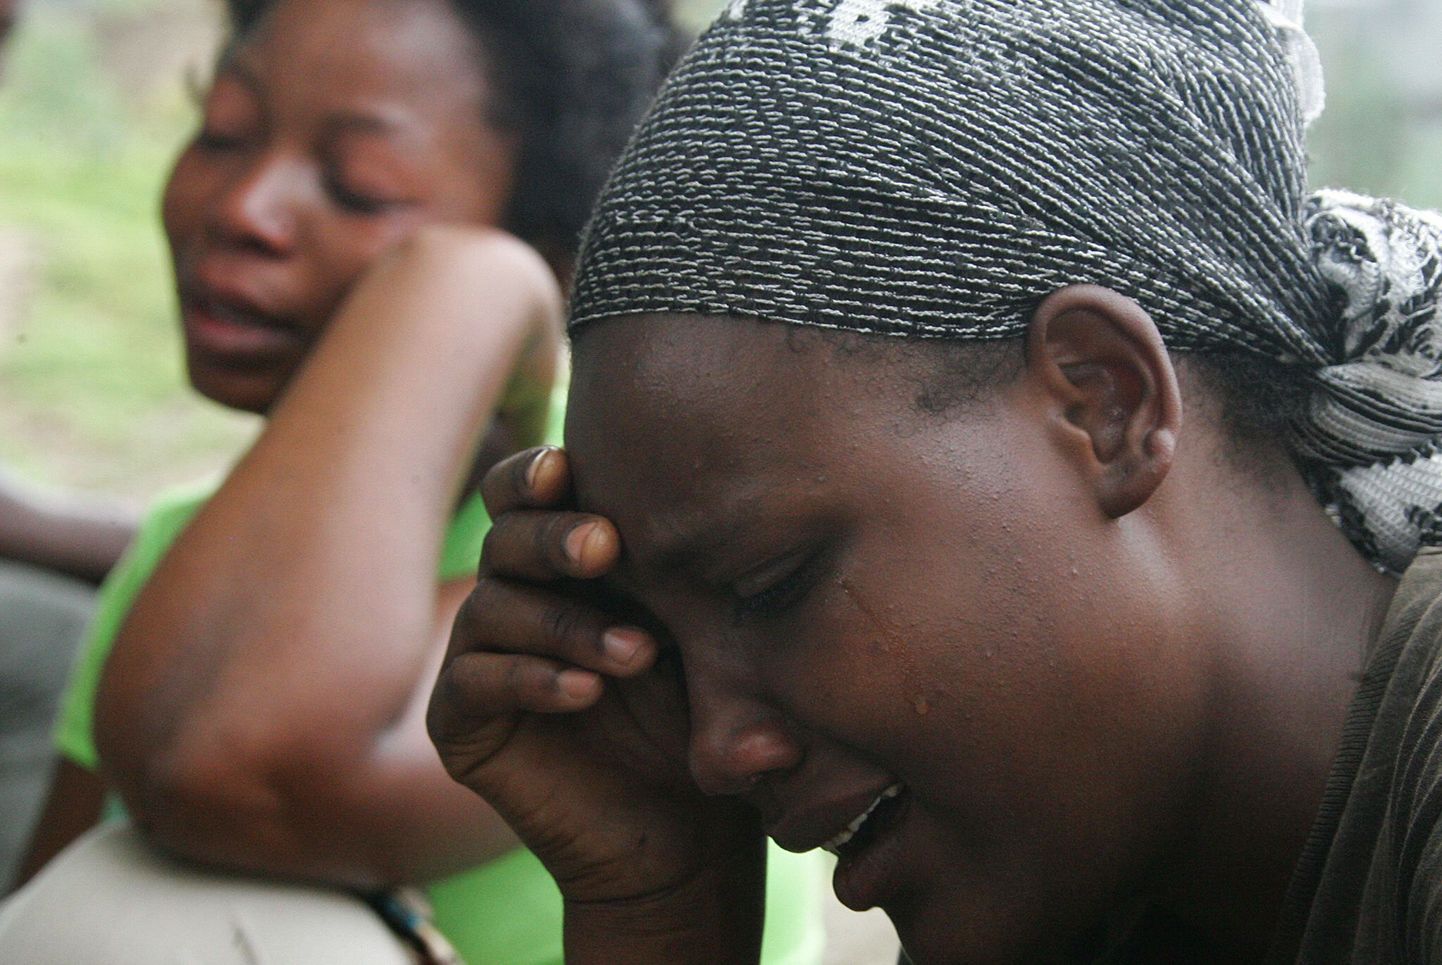 Tansaania ramadanipidustustel hukkus vähemalt 19 last.